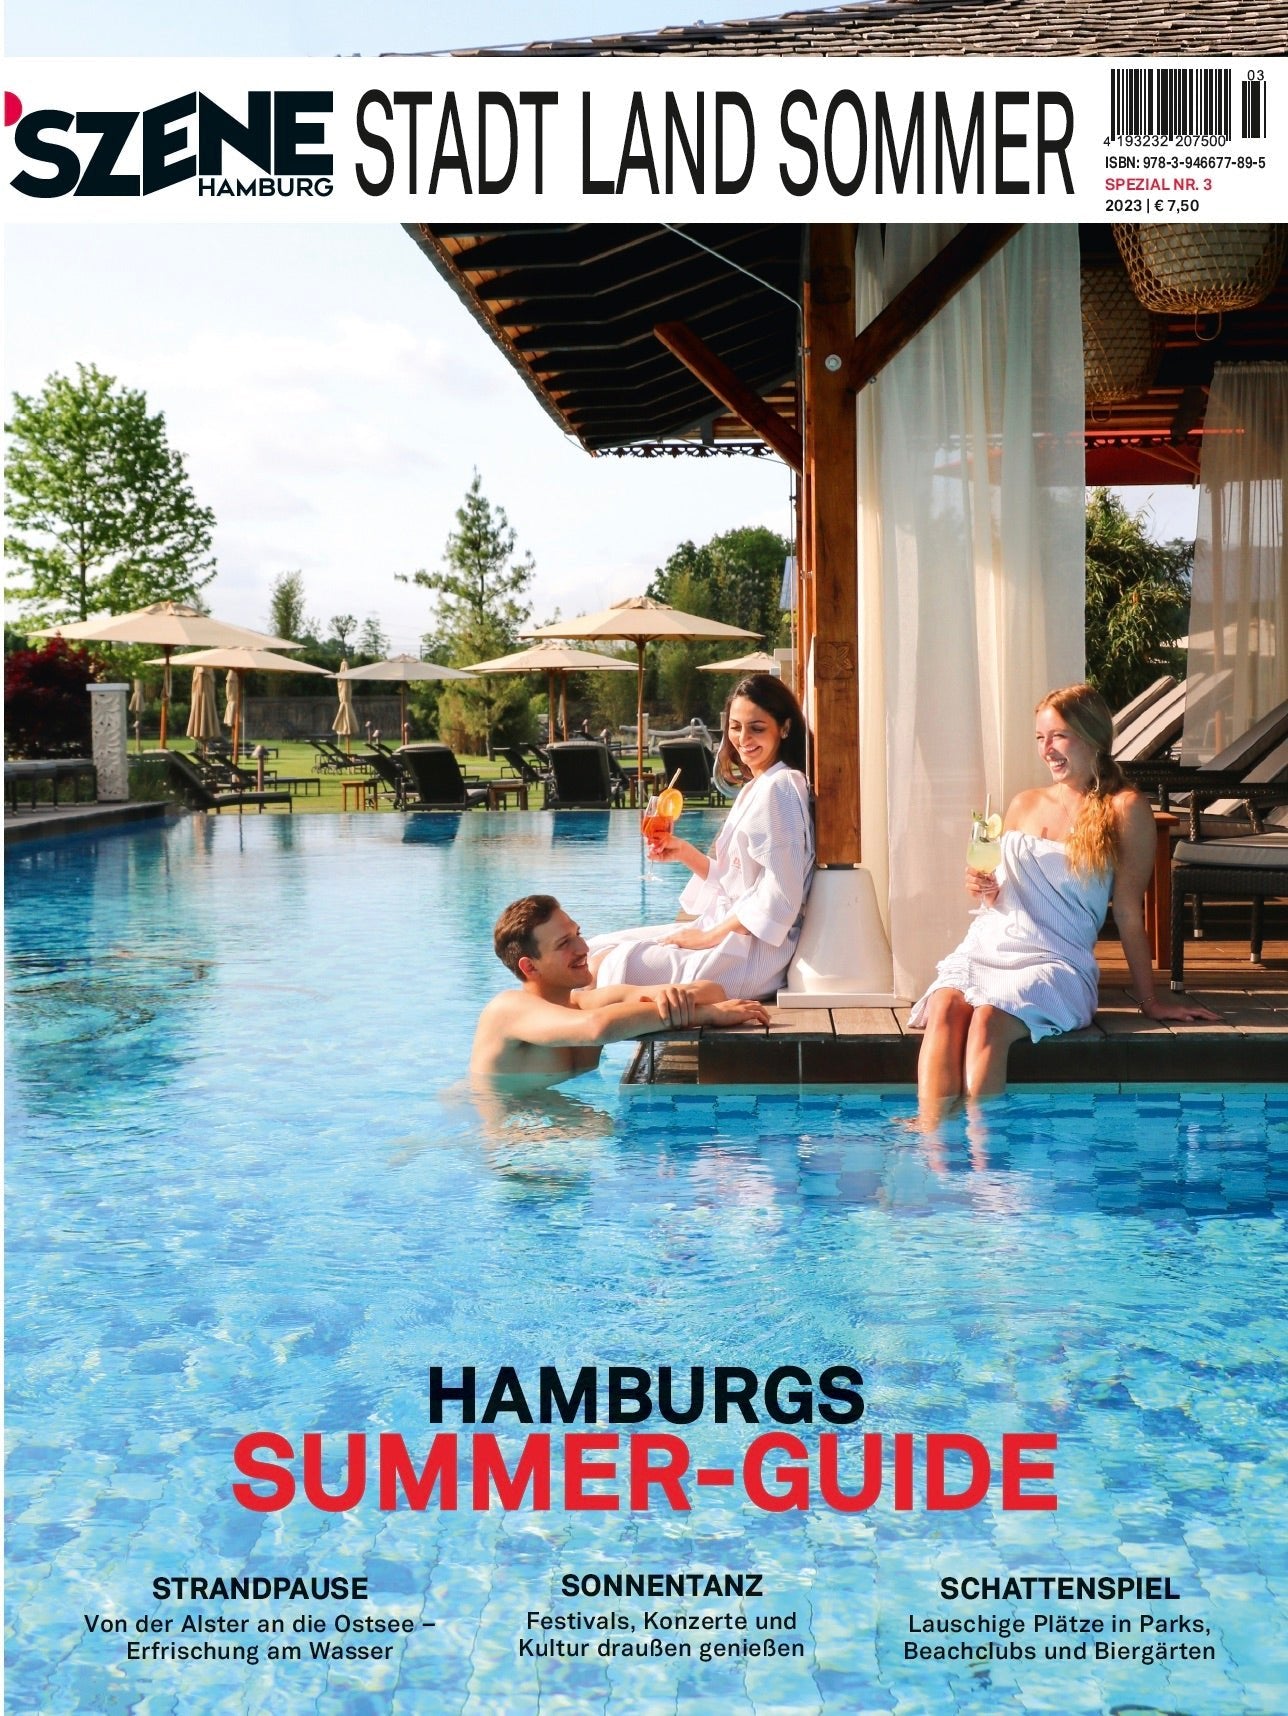 SZENE HAMBURG Stadt, Land, Sommer 2023 - SZENE HAMBURG Shop